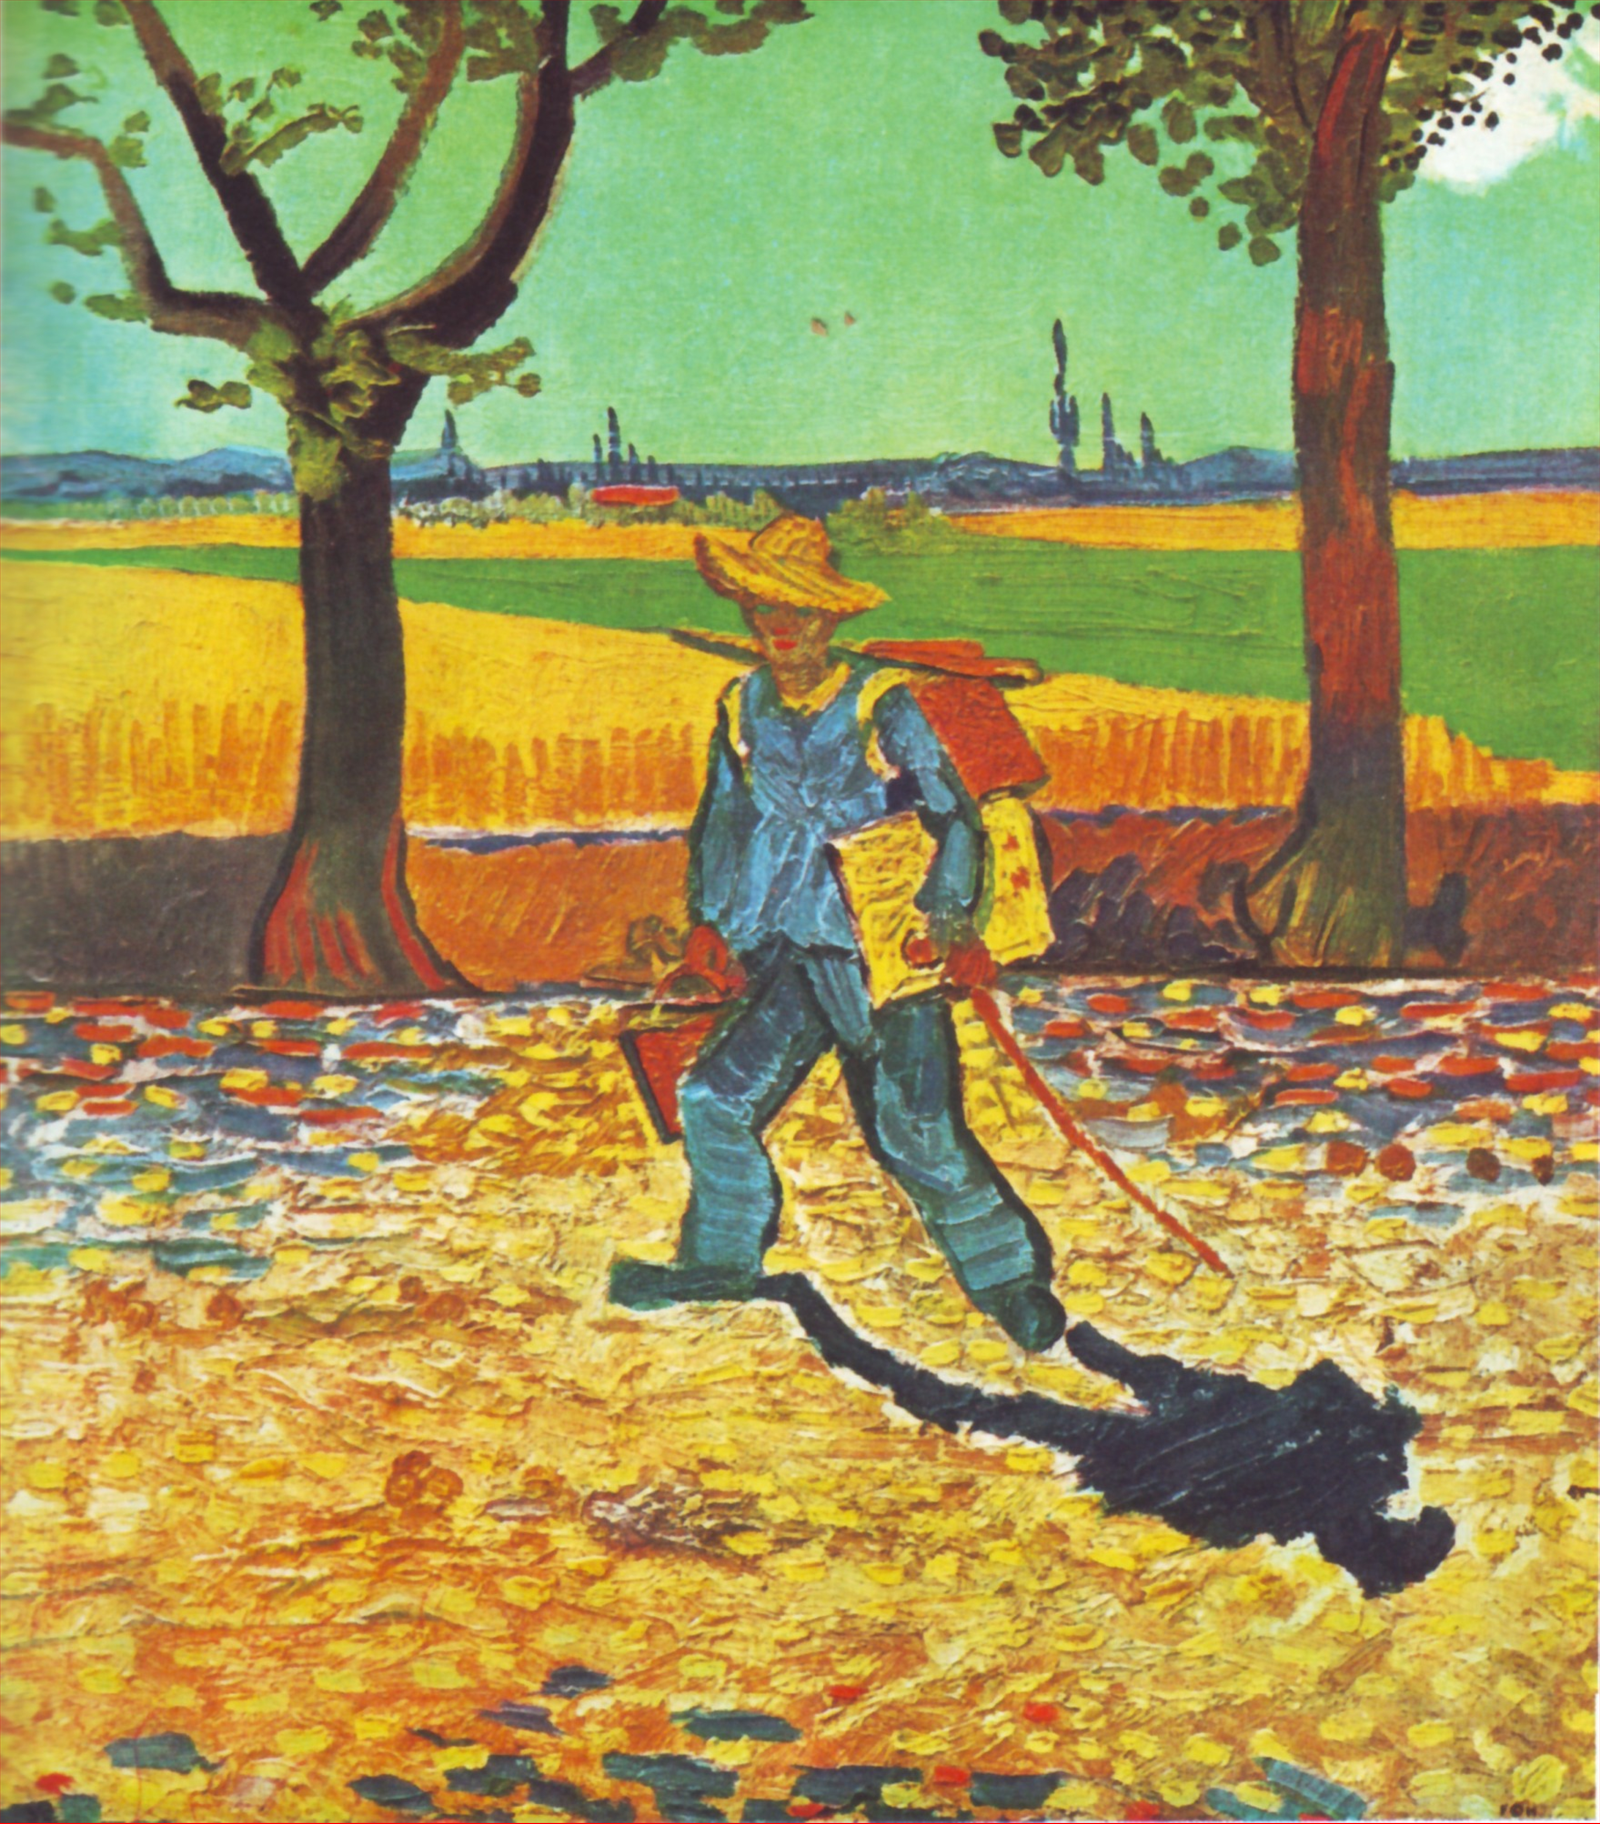 Художник по пути на работу by Винсе́нт Виллем Ван Гог - 1888 - - 